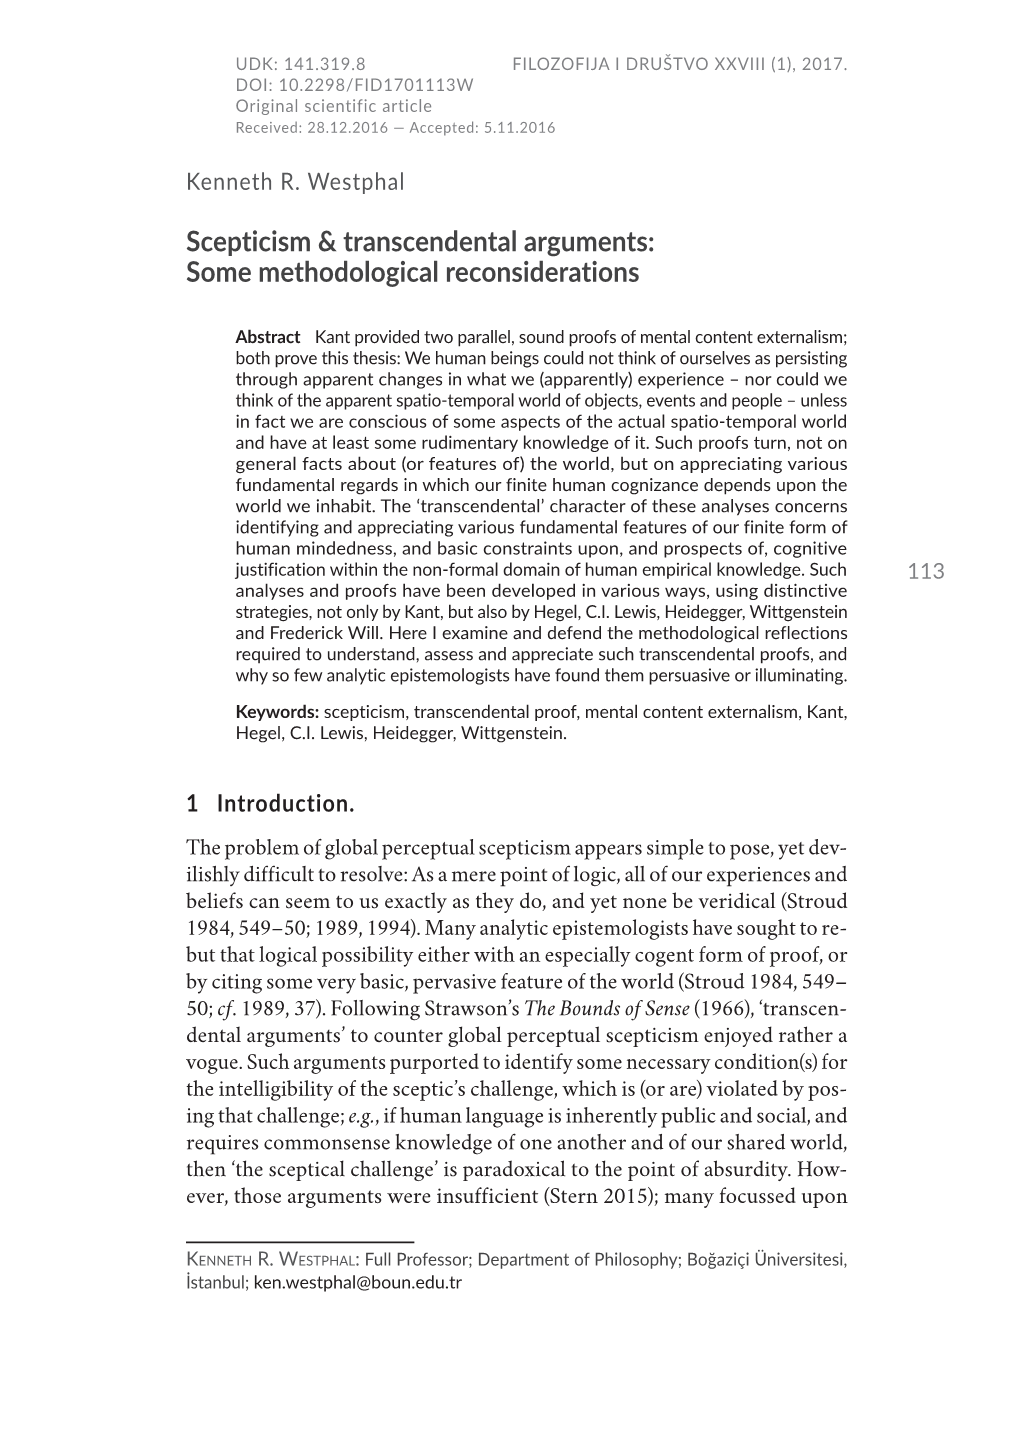 Scepticism & Transcendental Arguments: Some Methodological